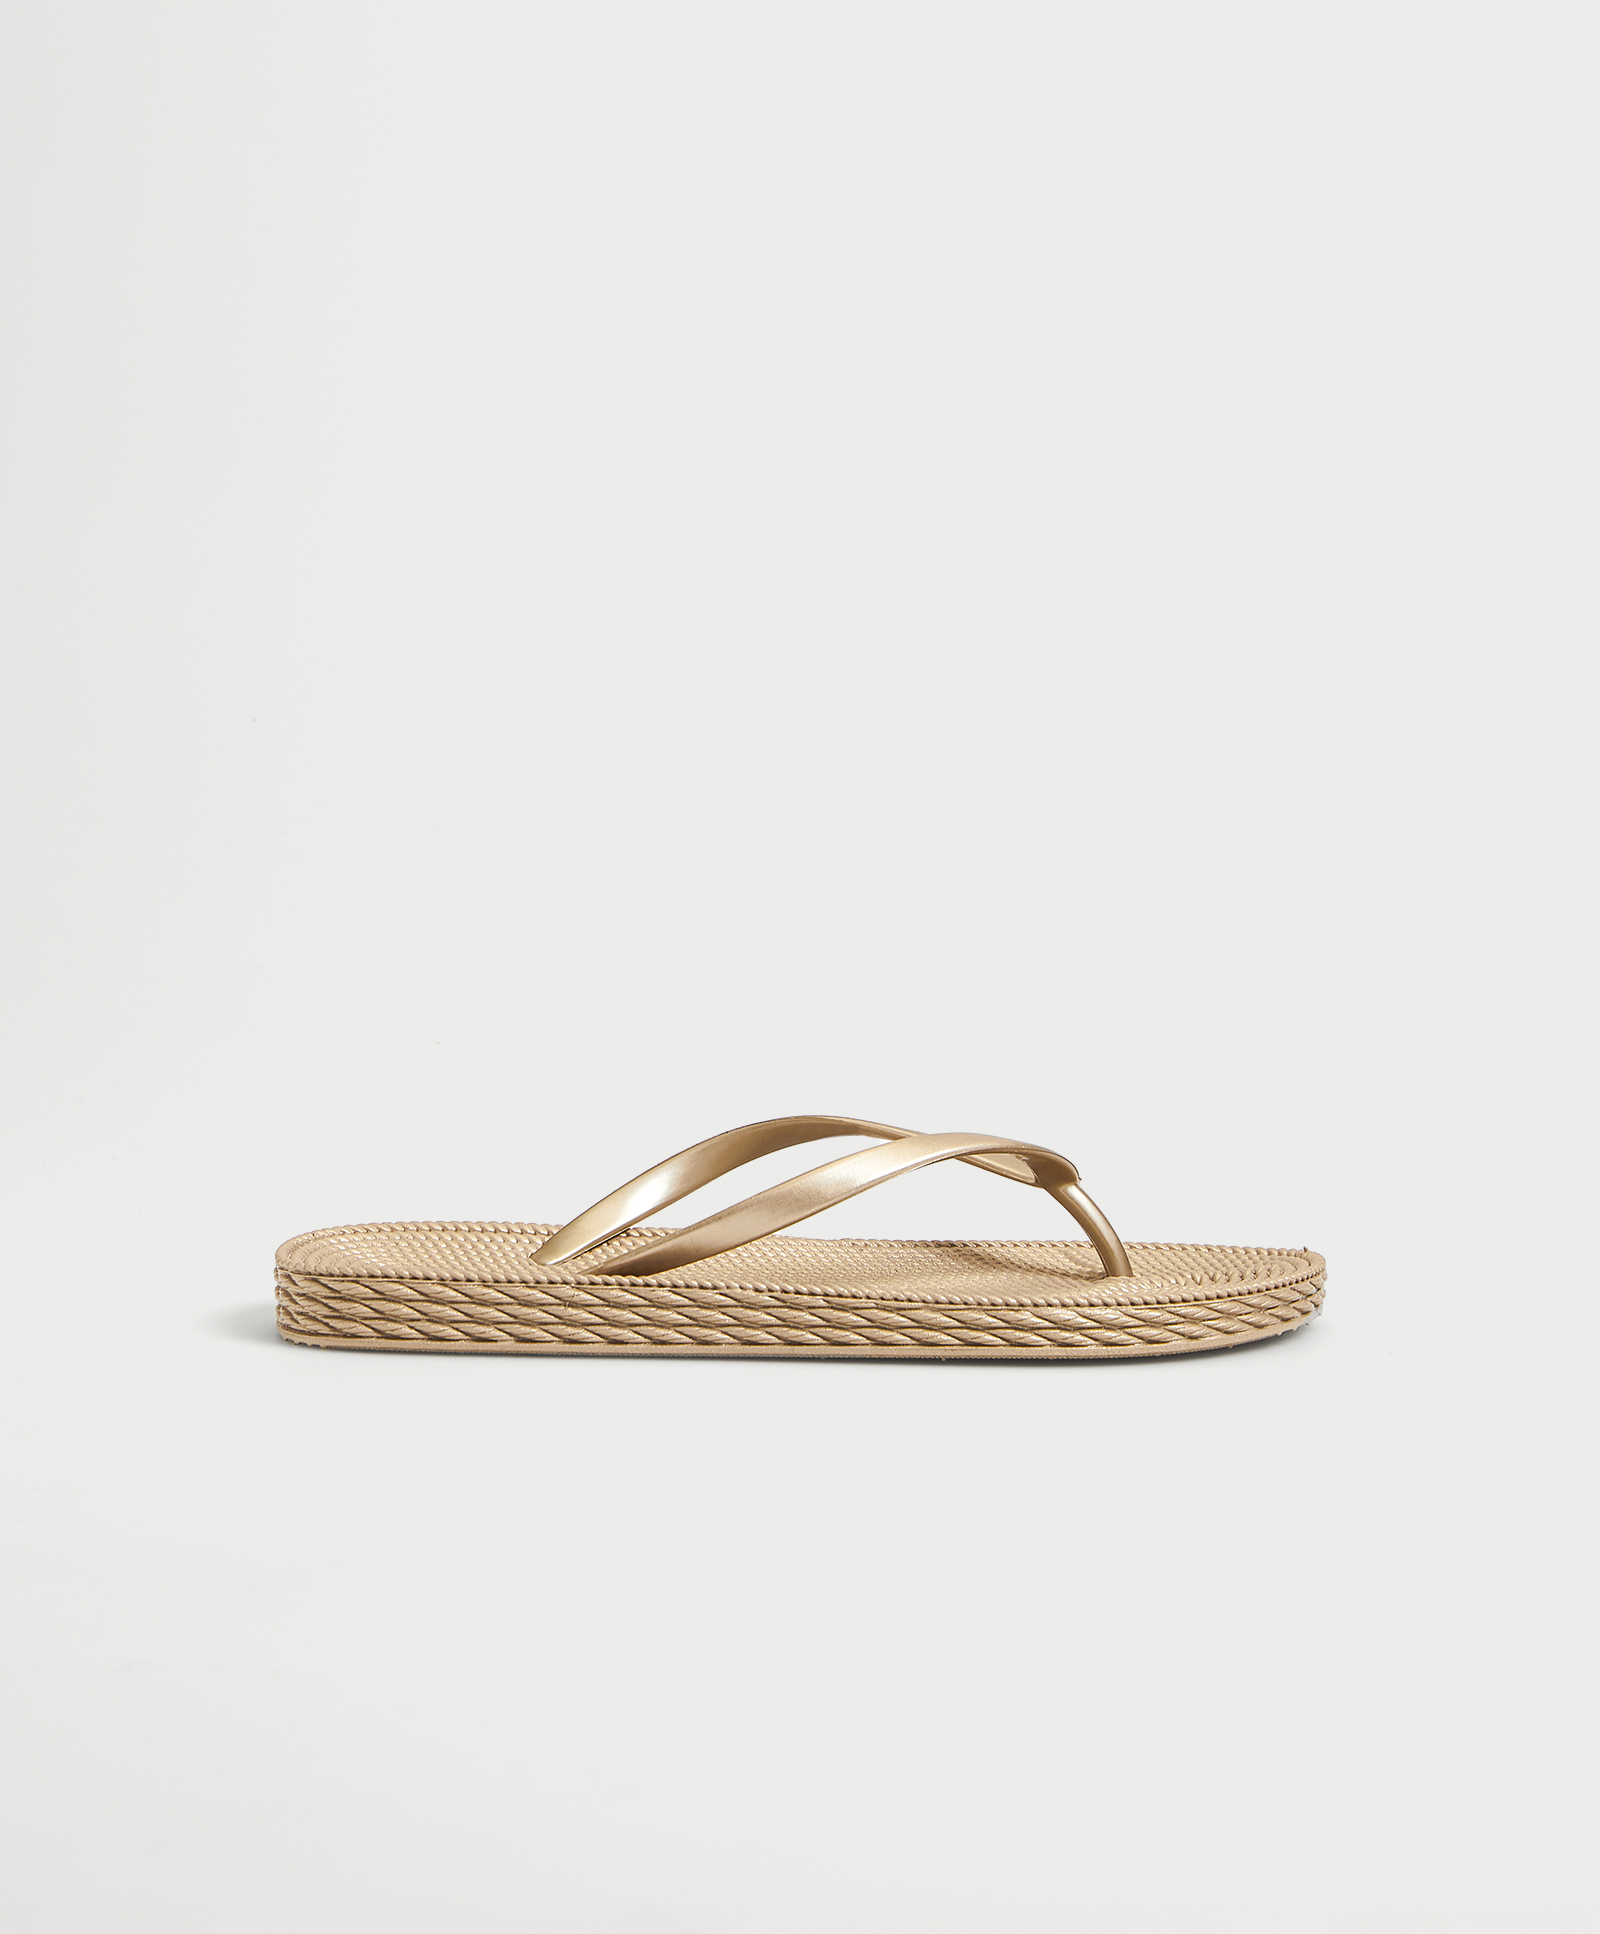 Gold textured beach sandals